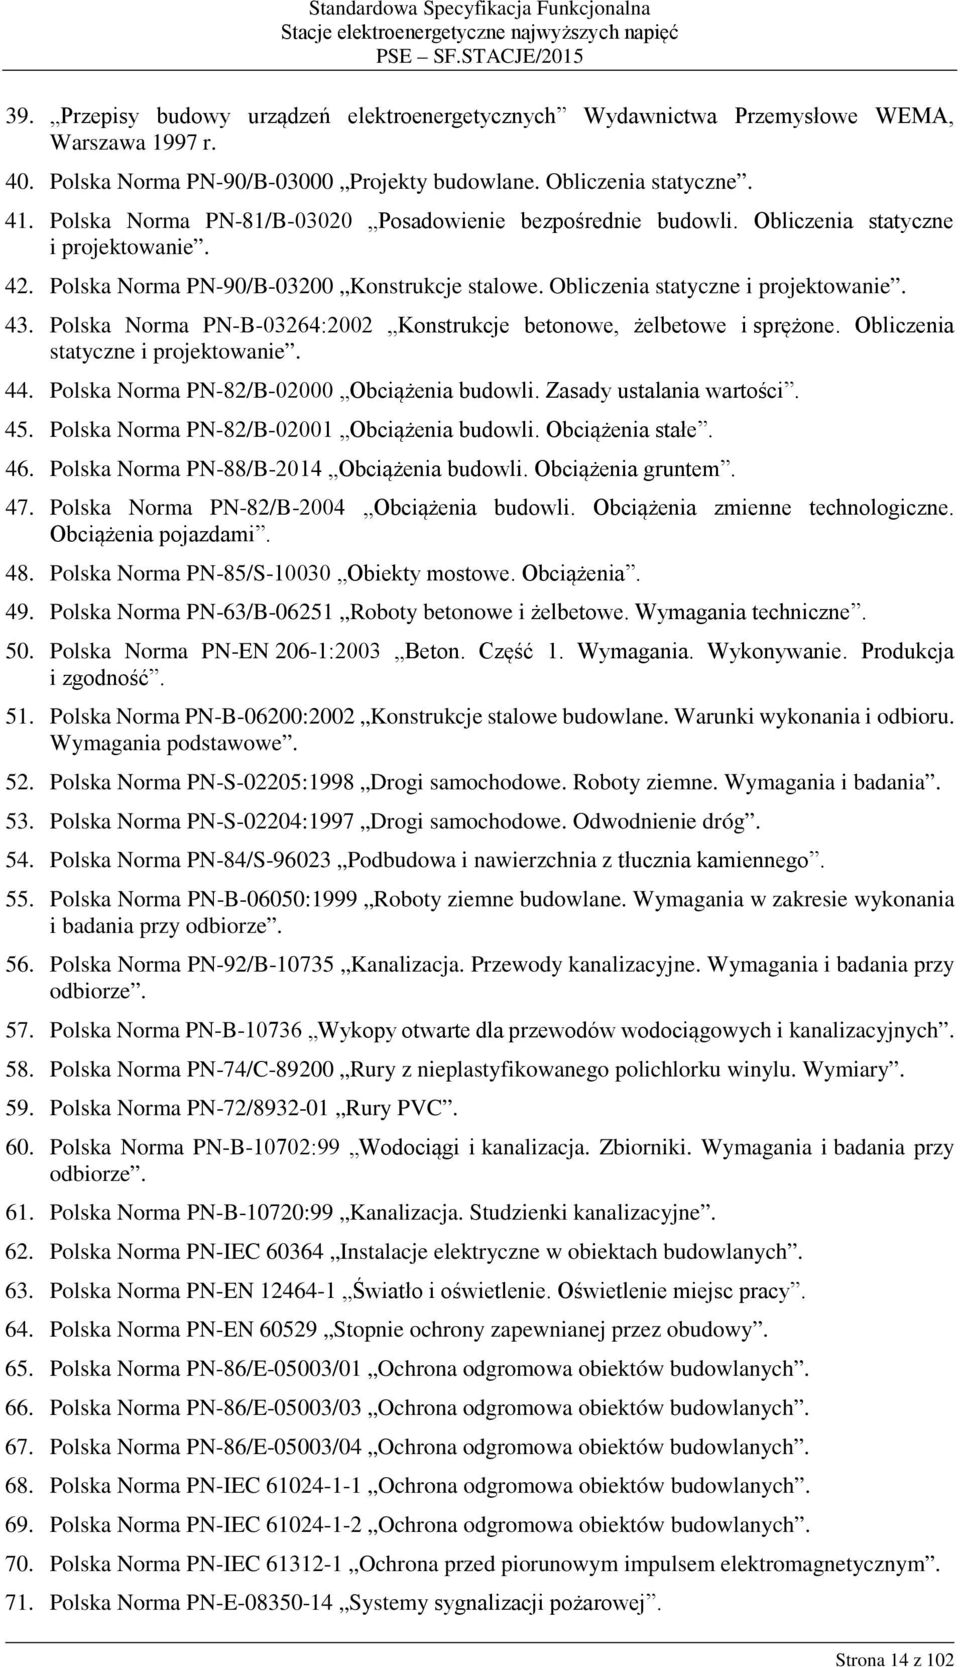 Obliczenia statyczne i projektowanie. 43. Polska Norma PN-B-03264:2002 Konstrukcje betonowe, żelbetowe i sprężone. Obliczenia statyczne i projektowanie. 44.